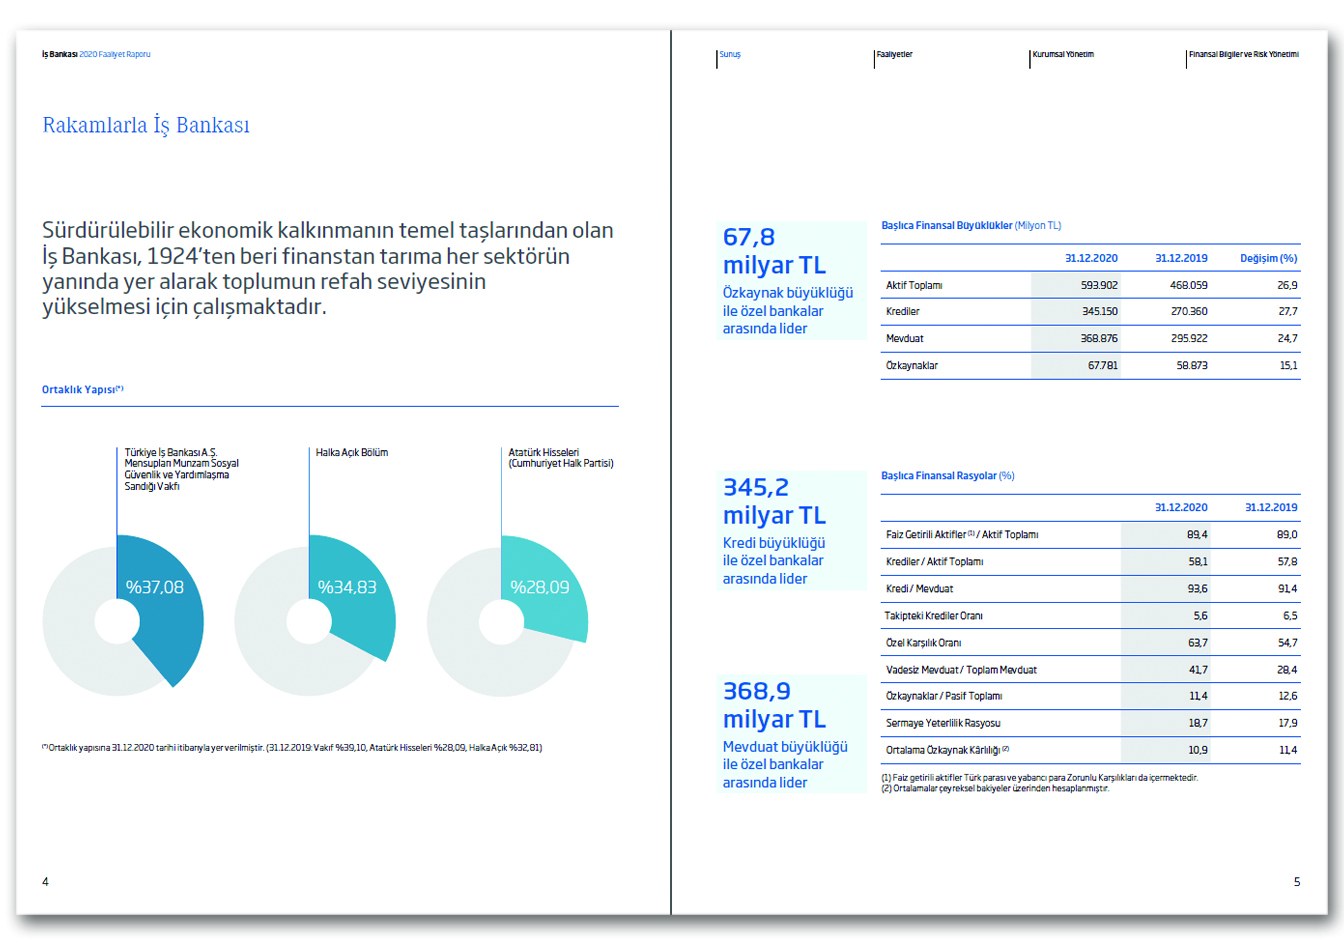 İŞ BANKASI / 2020 Faaliyet Raporu / 2020 Annual Report